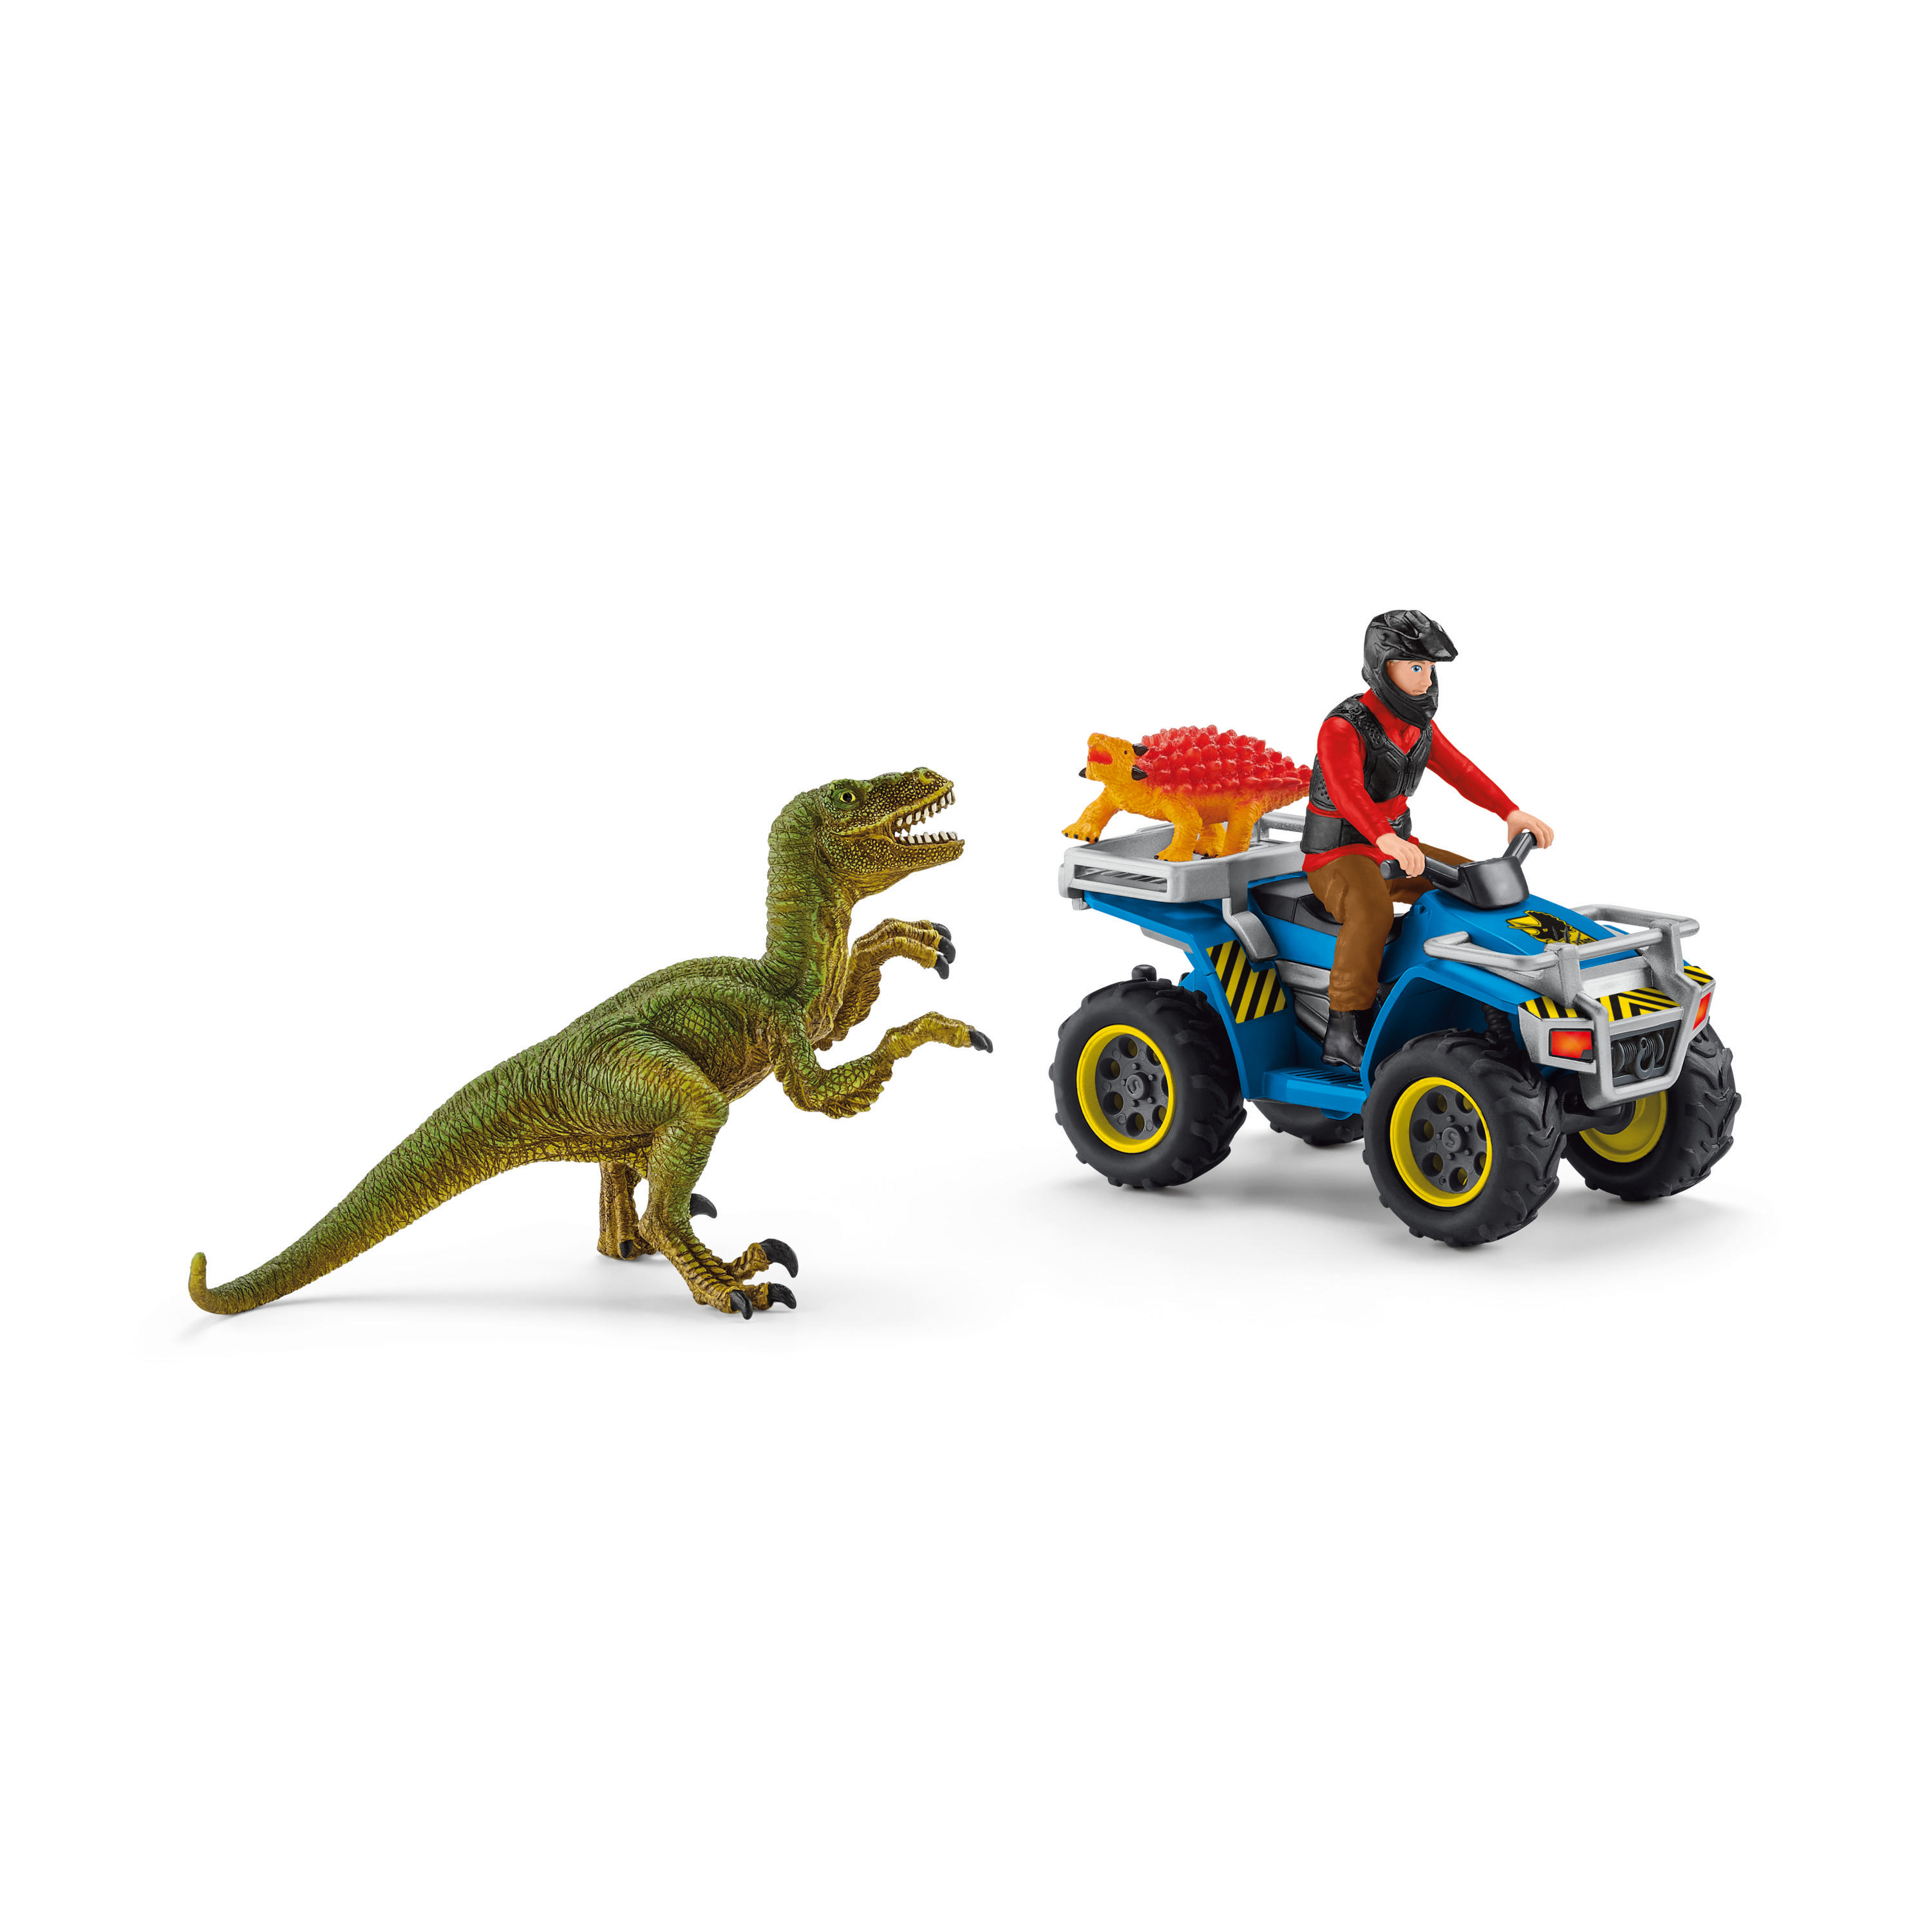 SCHLEICH Flucht auf Velociraptor Quad vor Mehrfarbig Spielfiguren